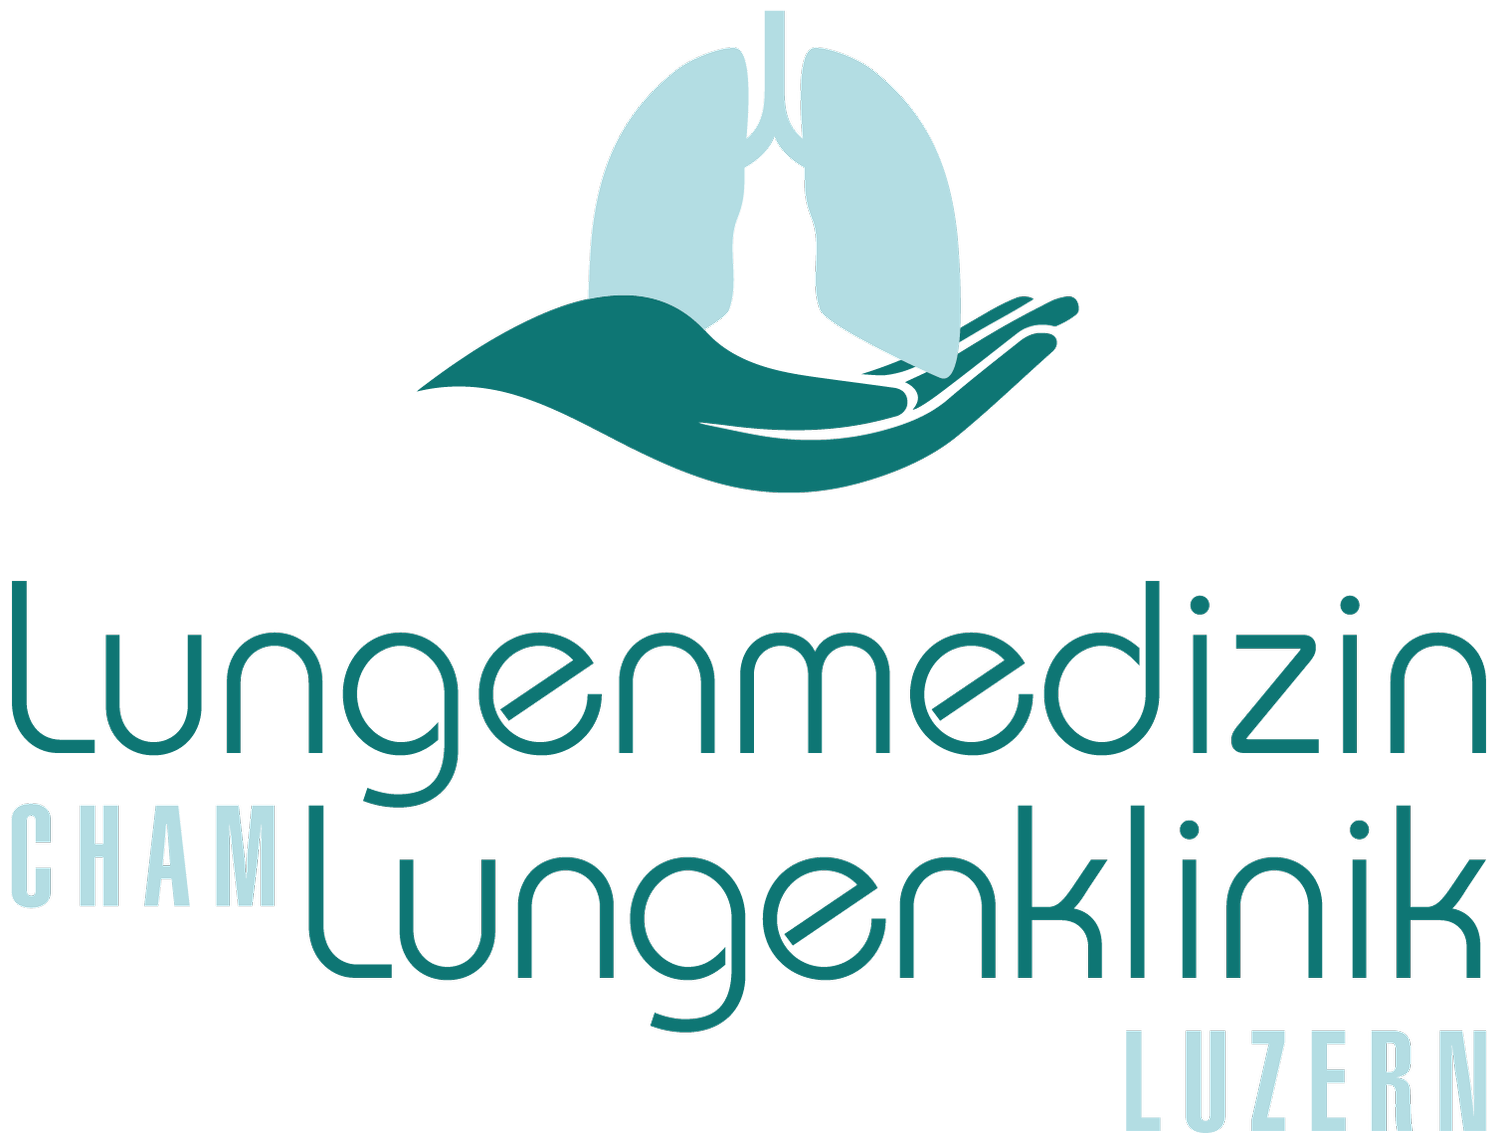 PulmoCura AG - Lungenmedizin Cham und Lungenklinik Luzern